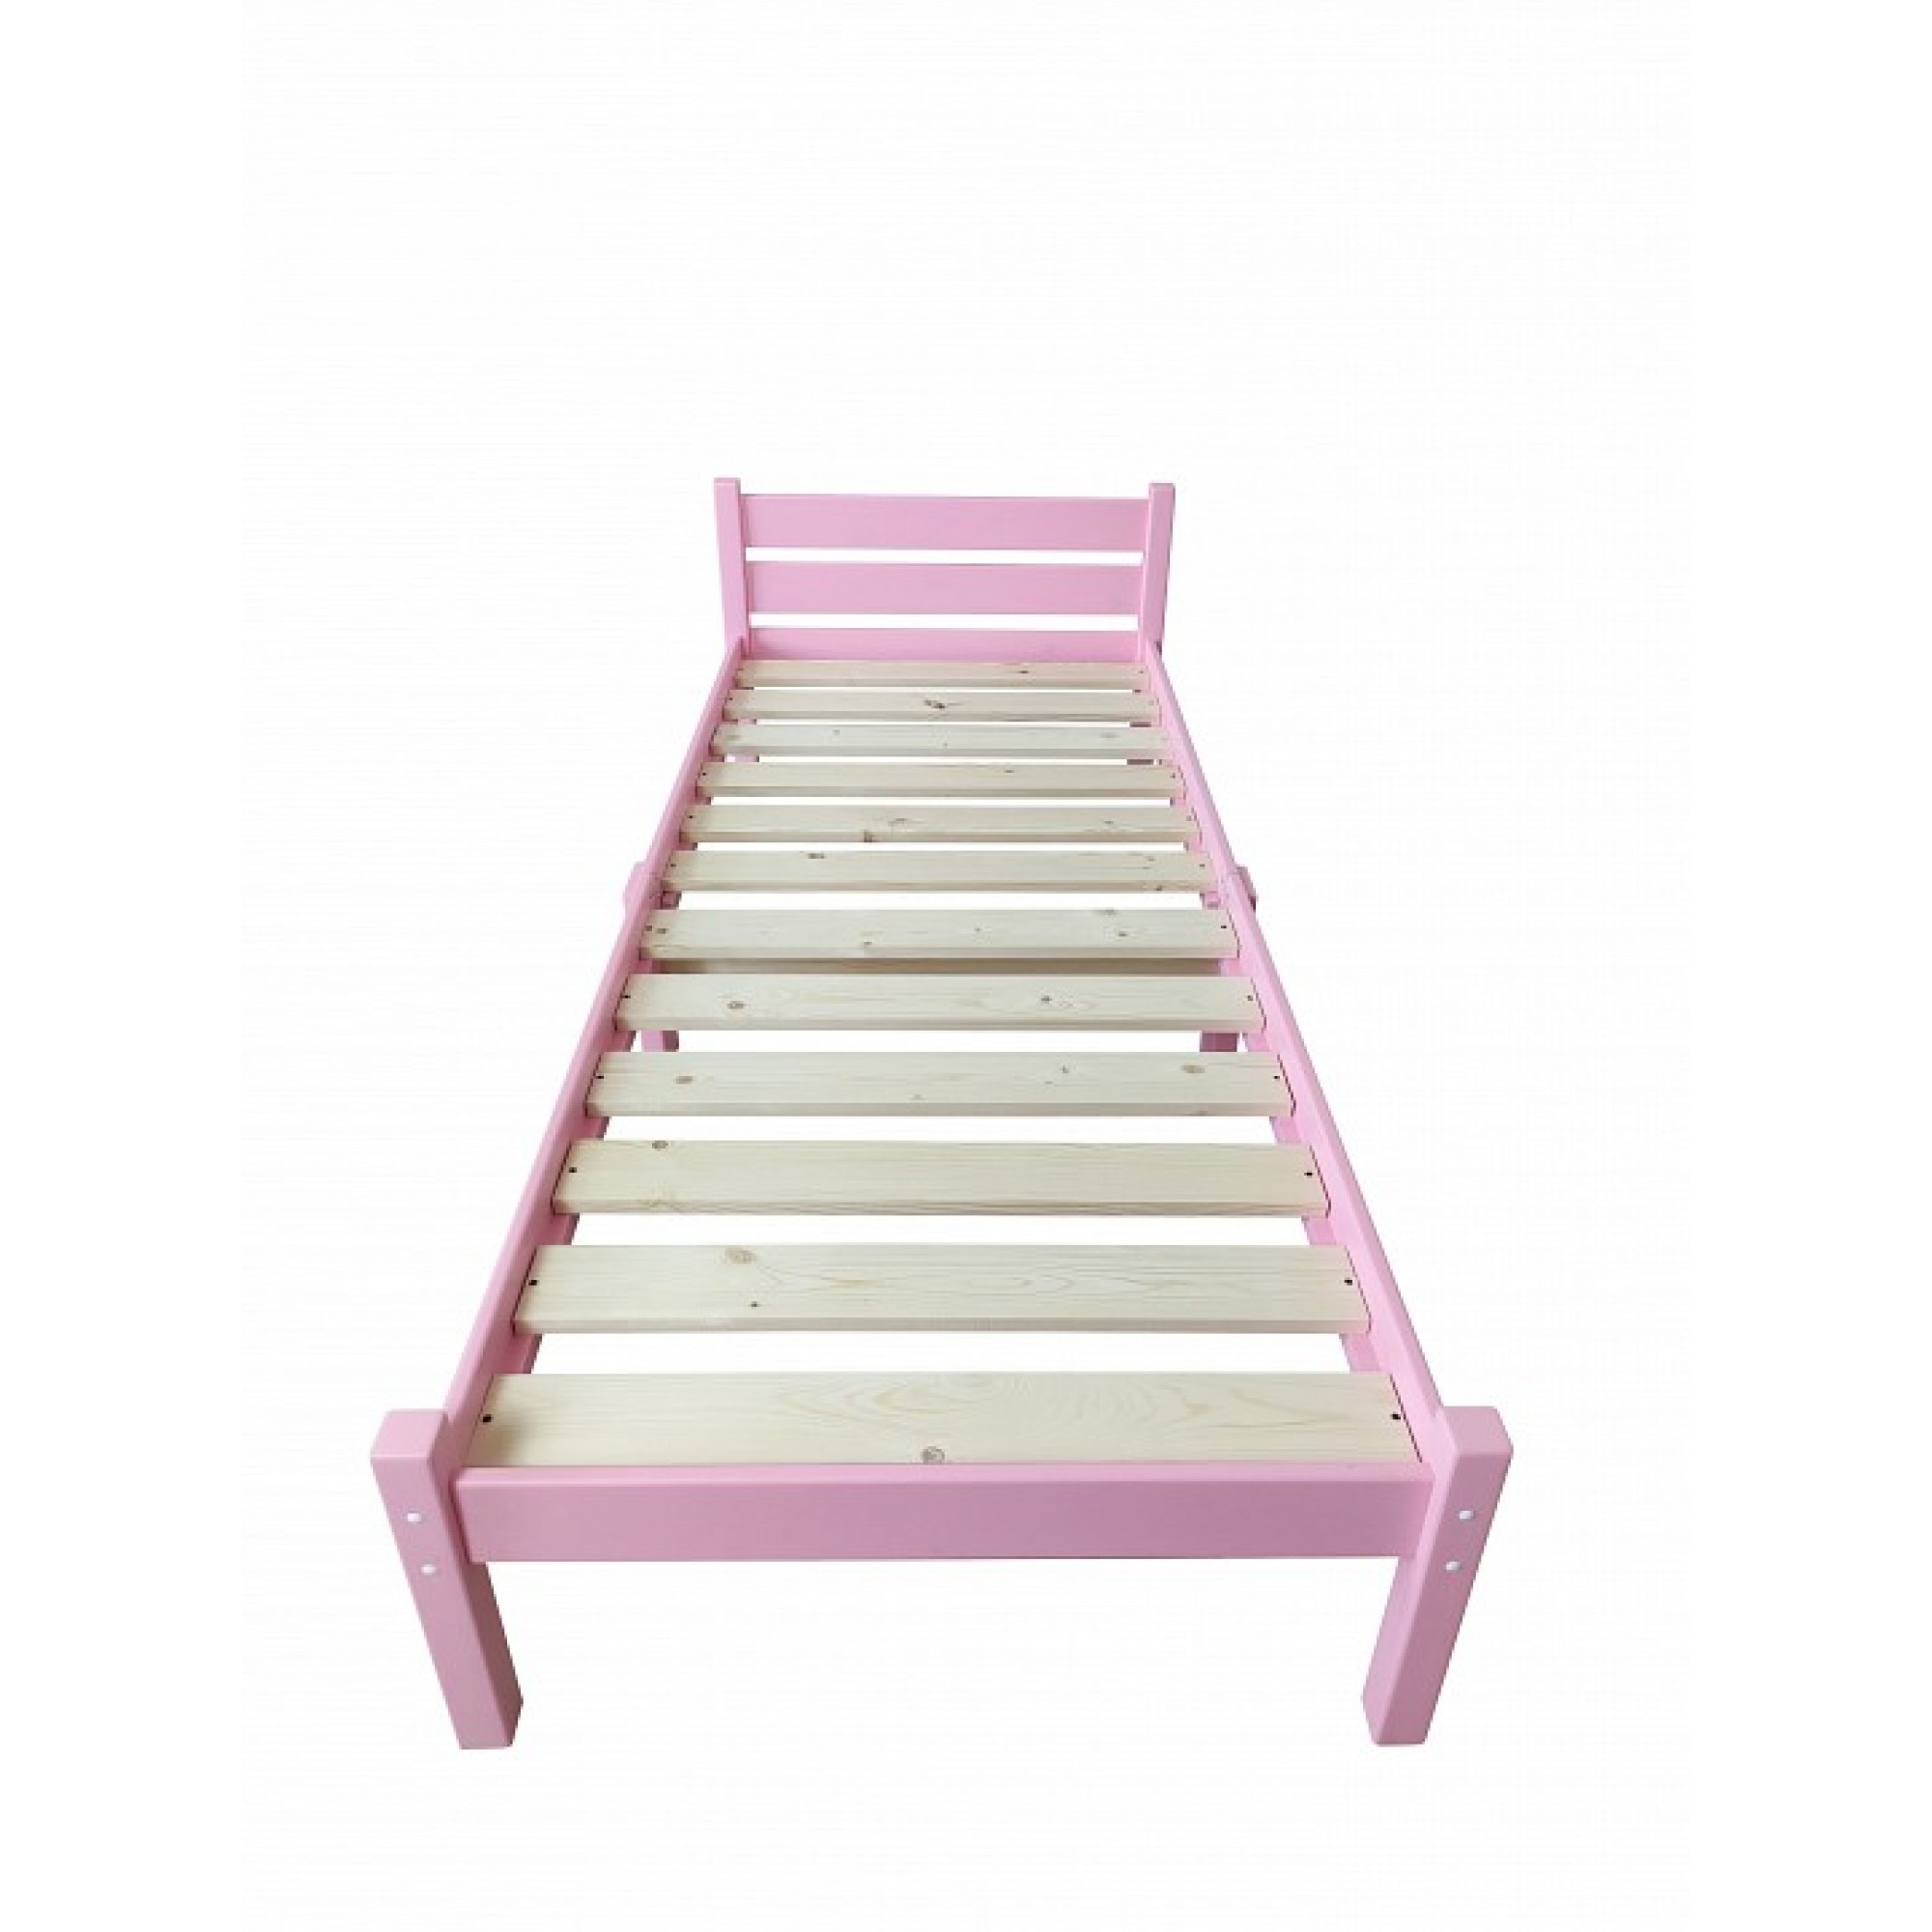 Кровать односпальная Компакт 2000x600 розовый    SLR_kompakt60roz